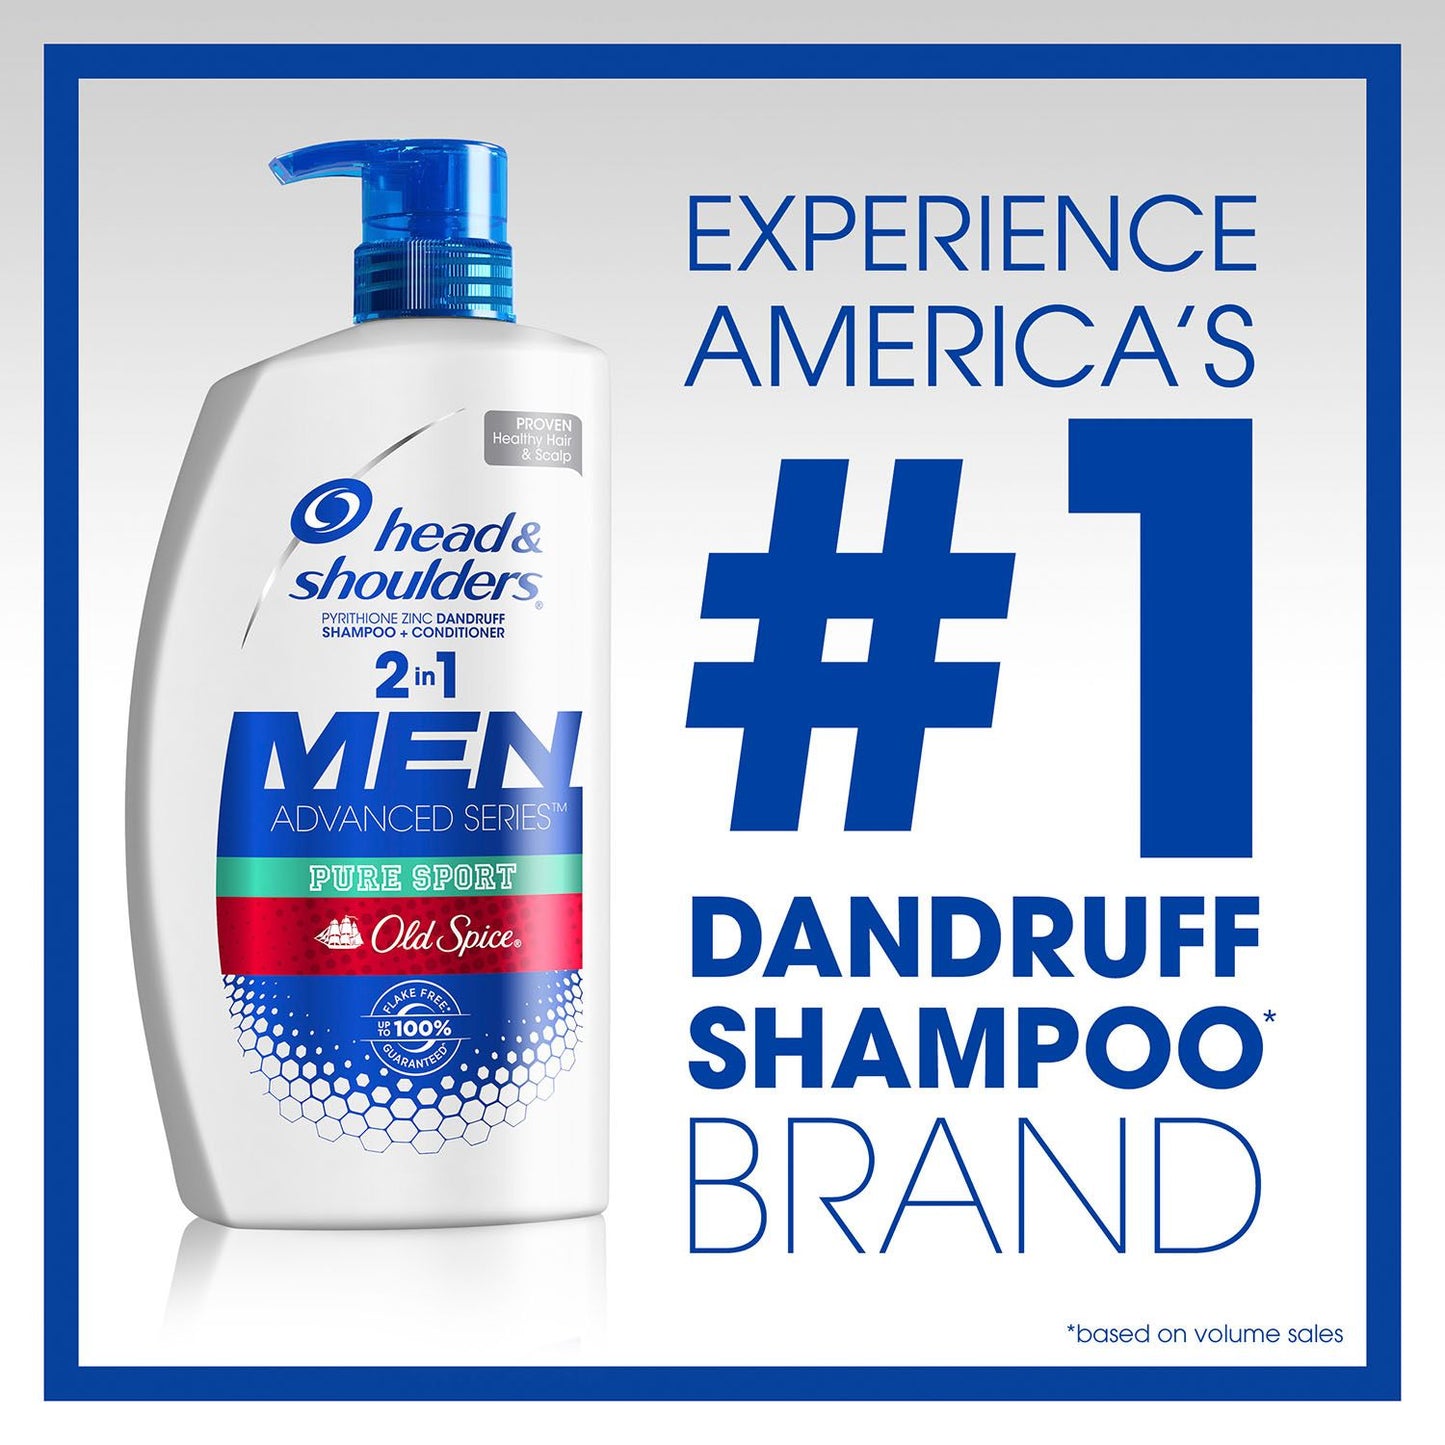 Head & Shoulders Men 2-in-1 Dandruff Shampoo & Conditioner, Old Spice Pure Sport (43.3 fl. oz.)